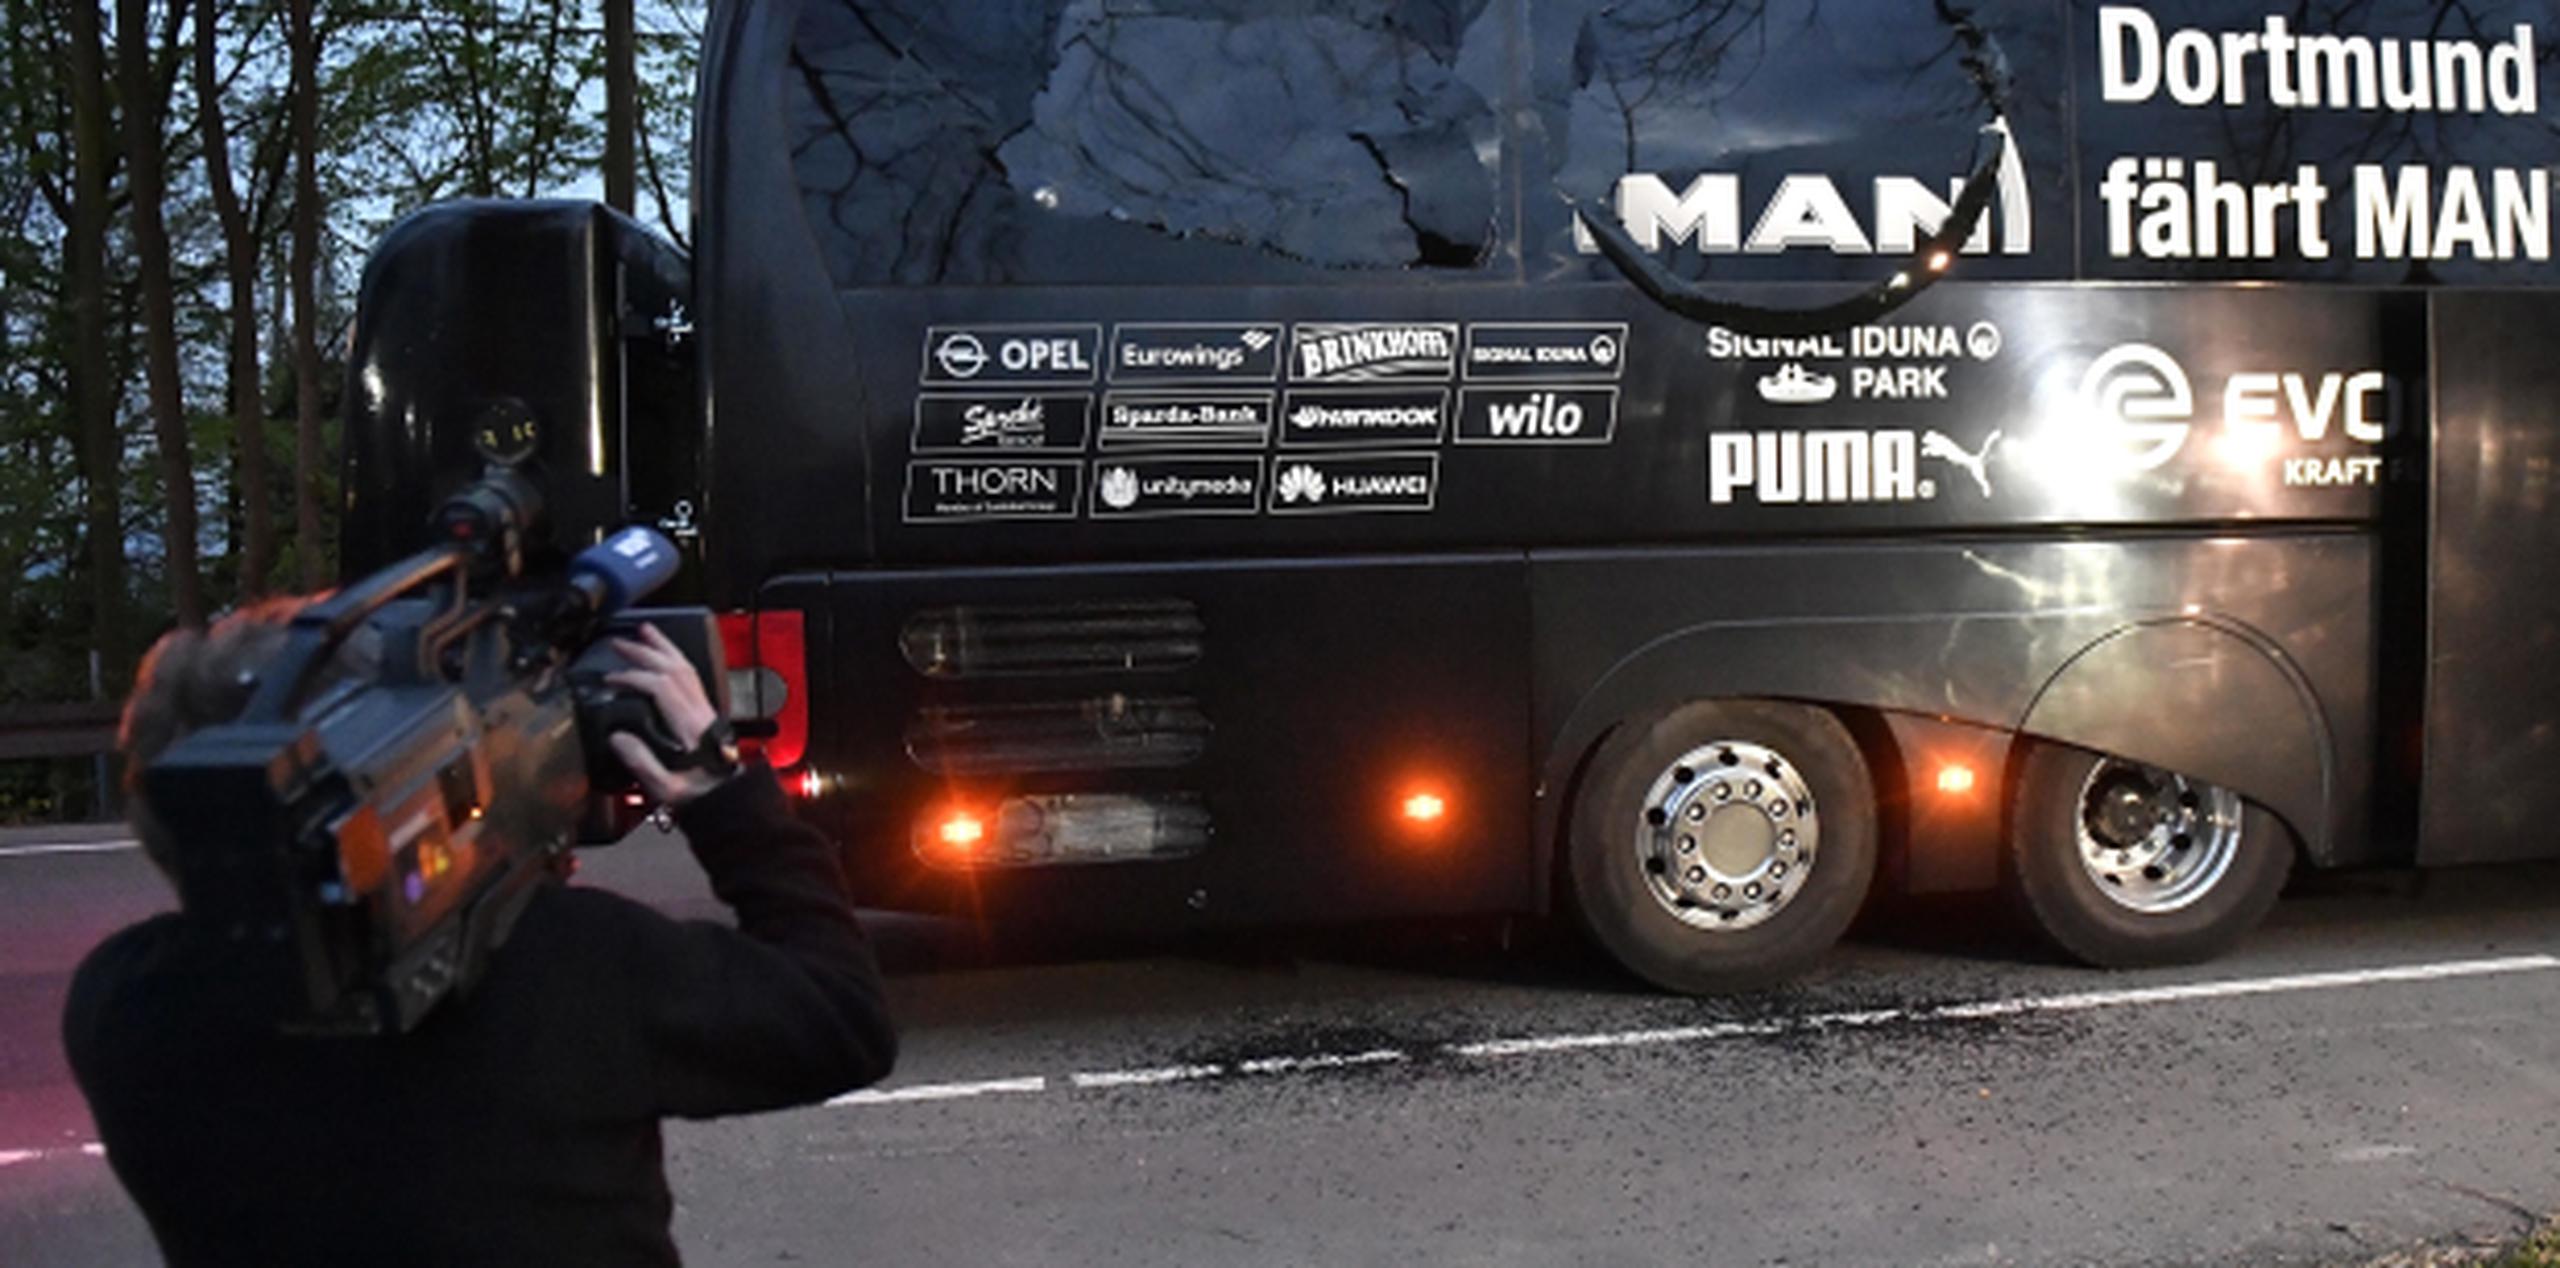 La explosión dejó un futbolista herido, y daños a una ventana del autobús. (AP/Martin Meissner)